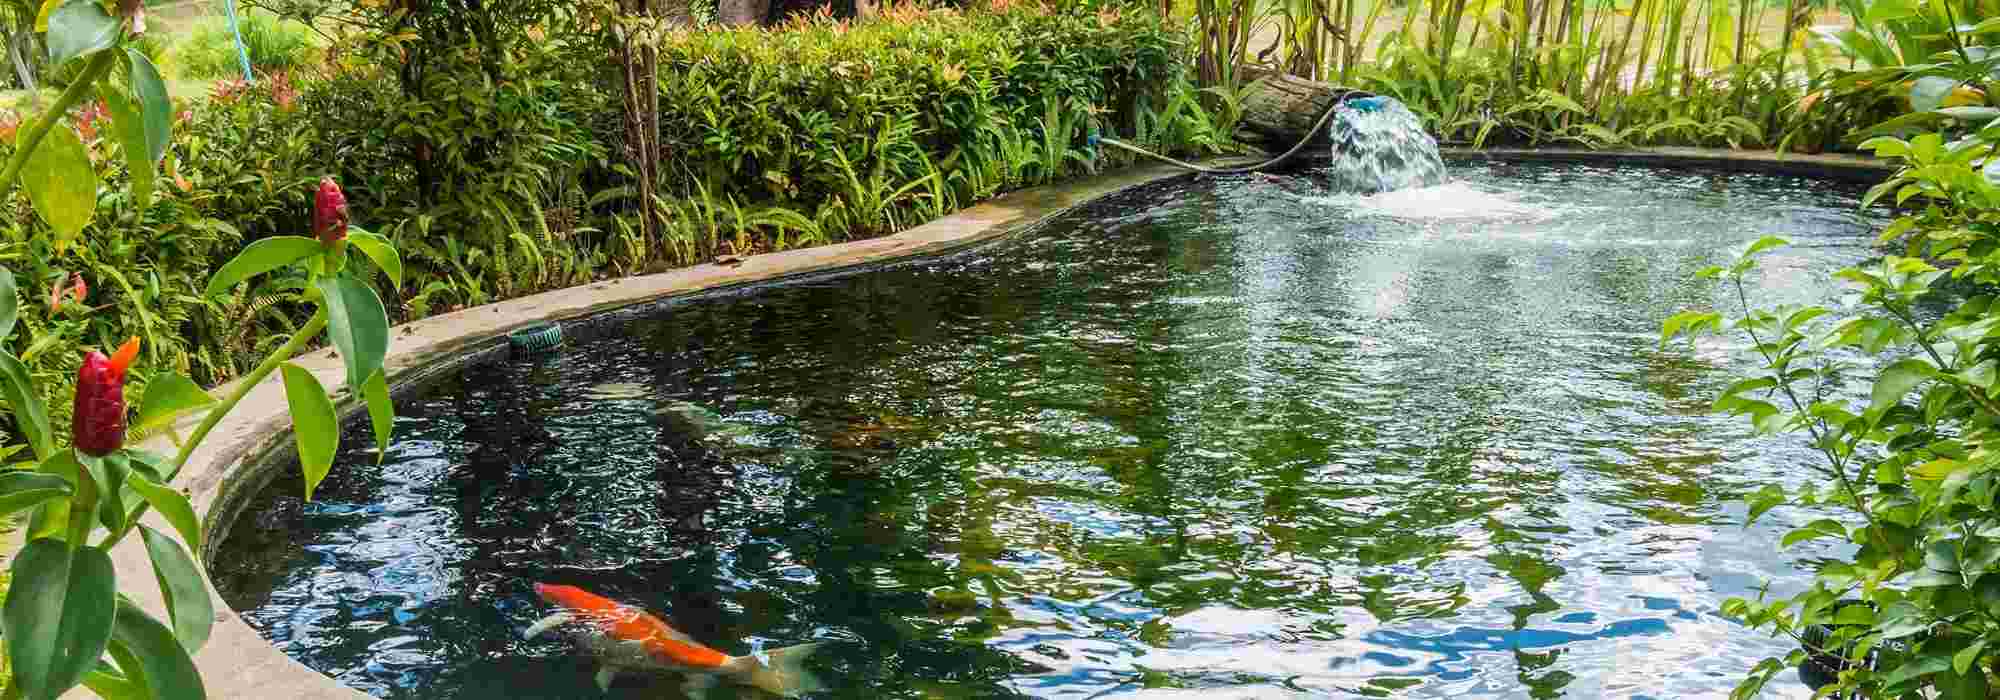 Comment réparer un bassin préformé? > Aquiflor - Jardinerie Aquatique